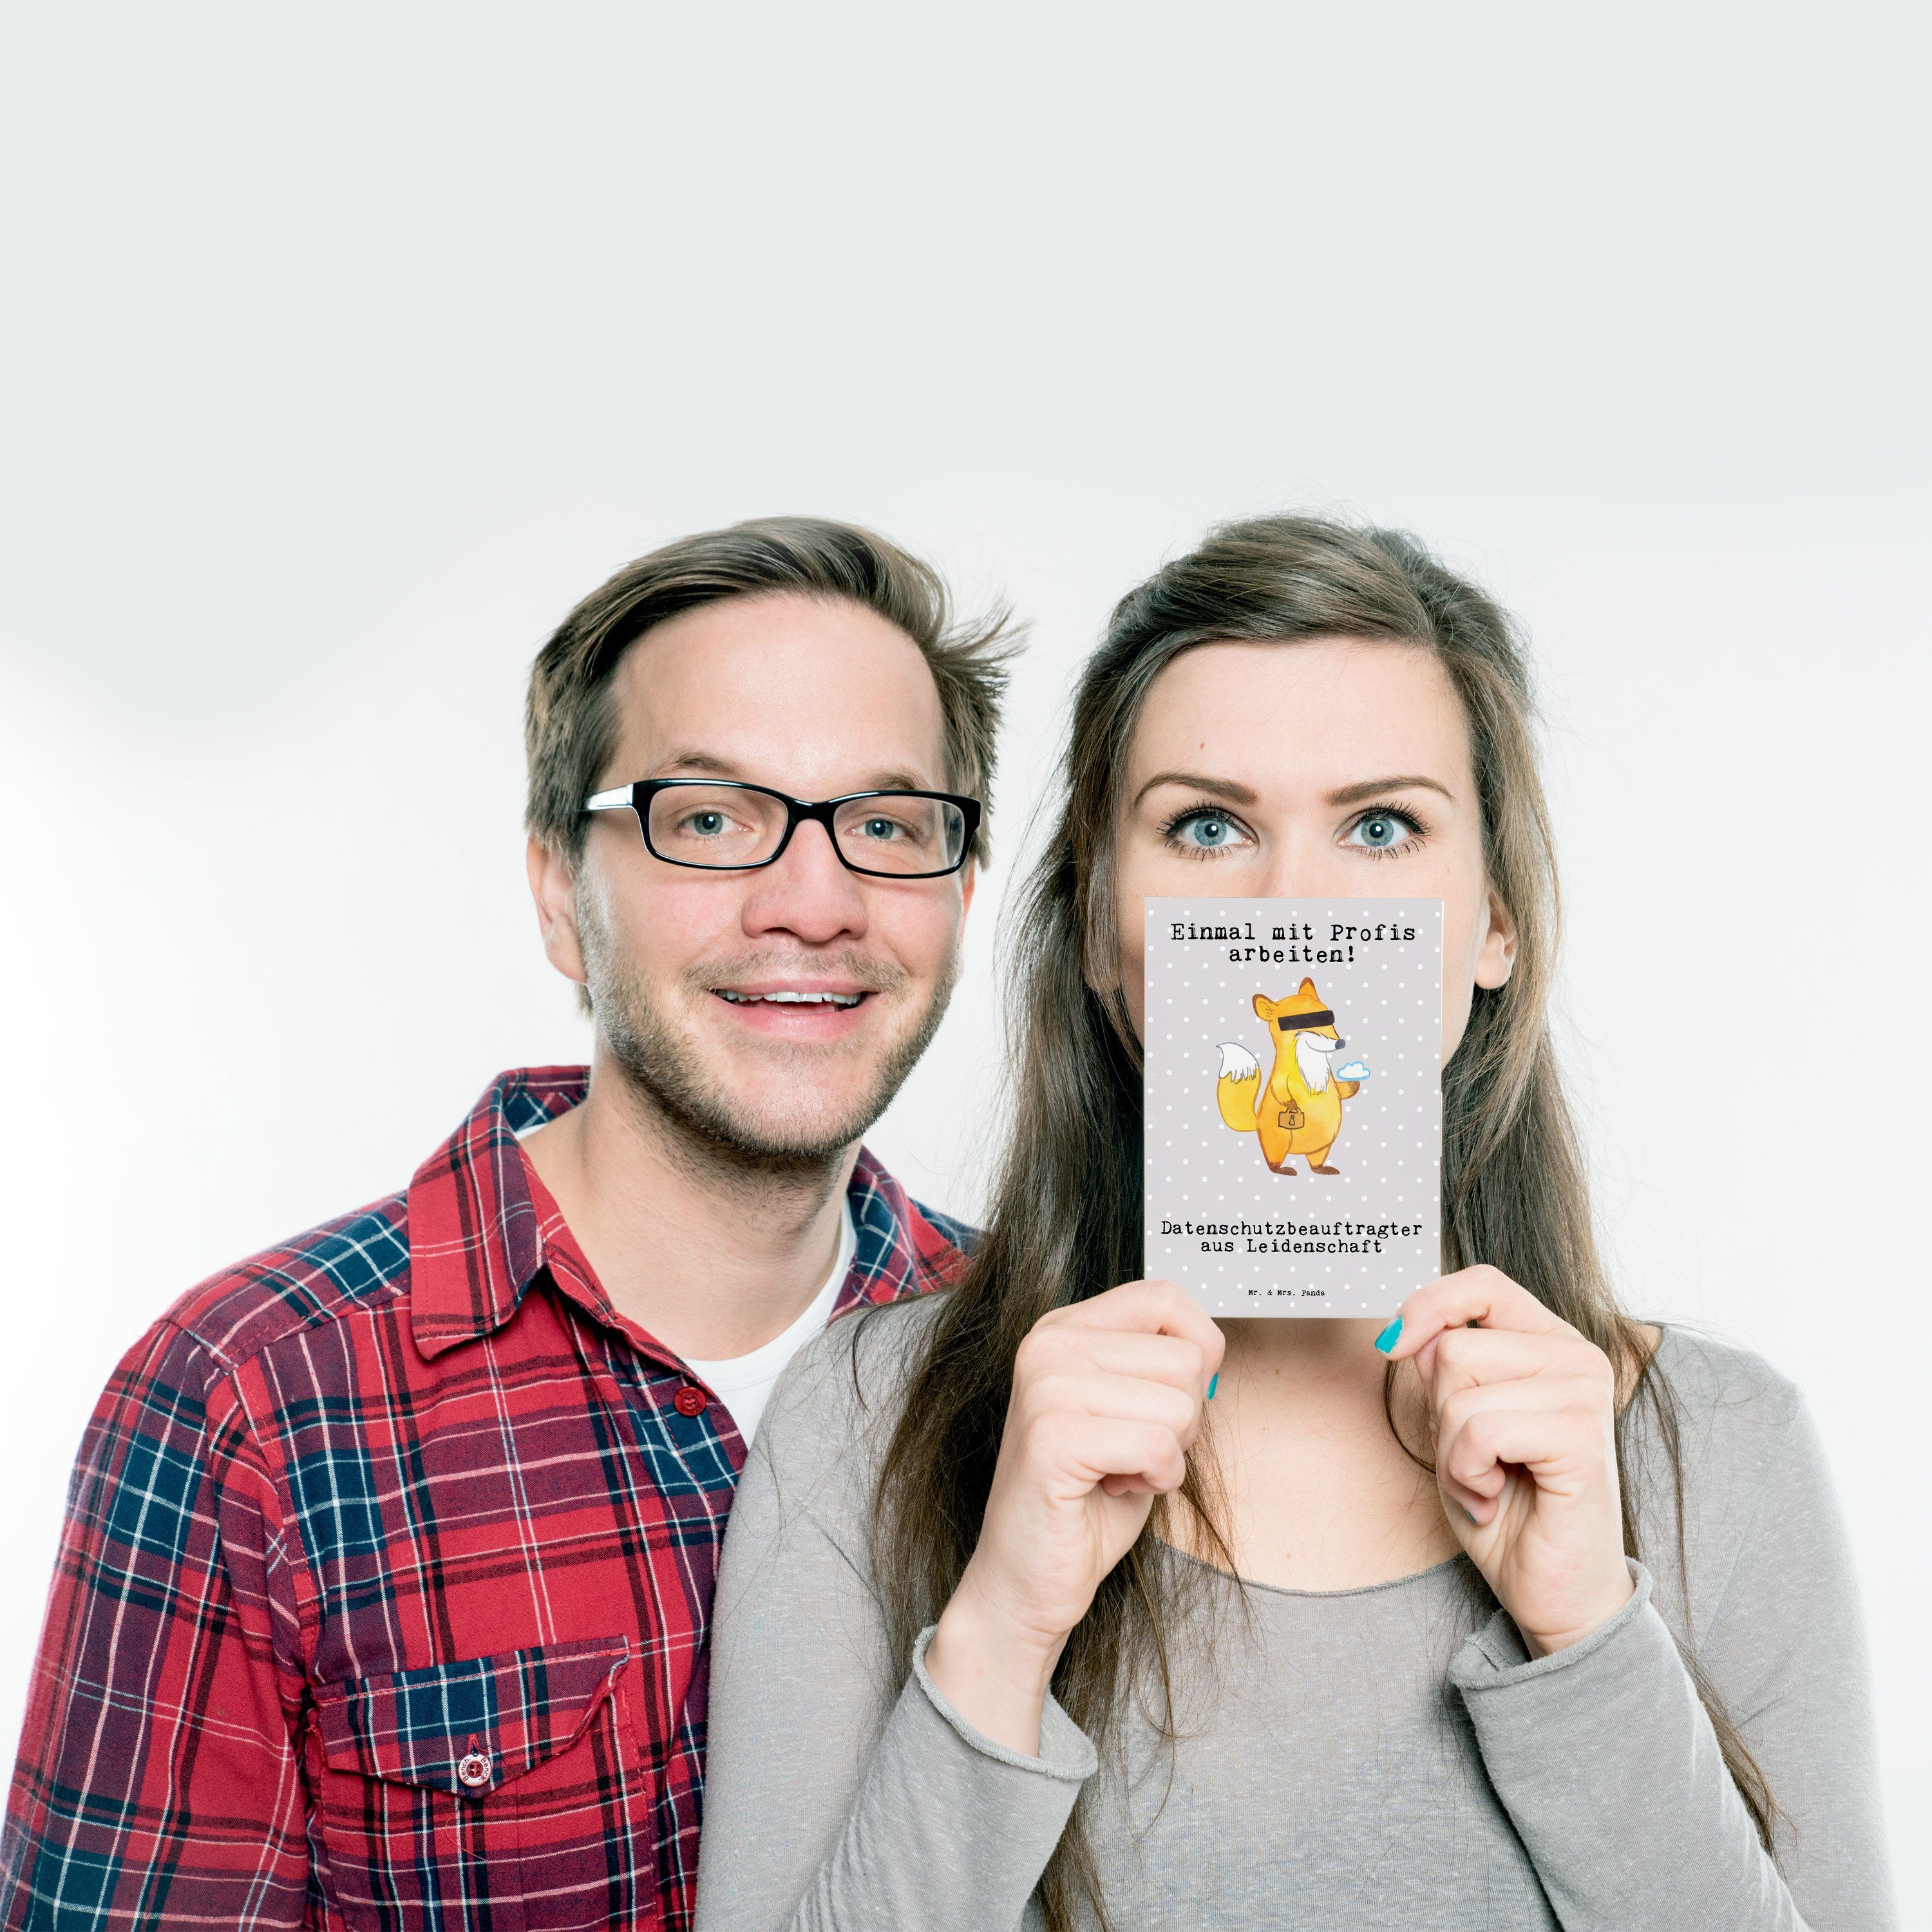 Mr. & Mrs. Panda - Grau Pastell - Geschenk, Leidenschaft Postkarte G Datenschutzbeauftragter aus